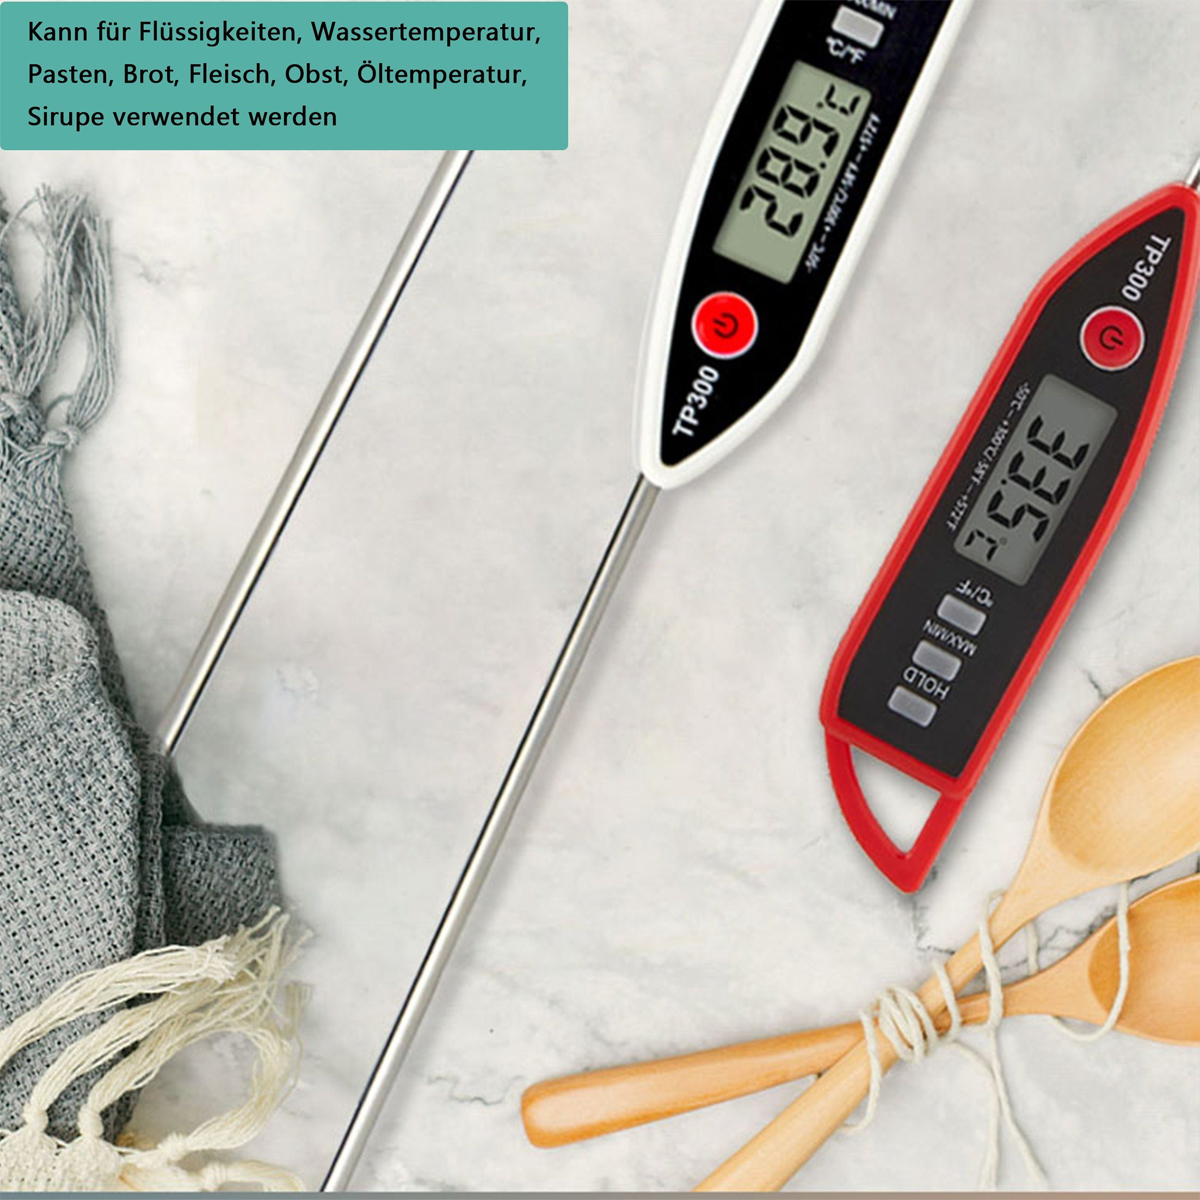 KÜLER Sondenthermometer, BBQ-Thermometer, Paste Flüssigkeit, Fleischthermometer für Wassertemperatur